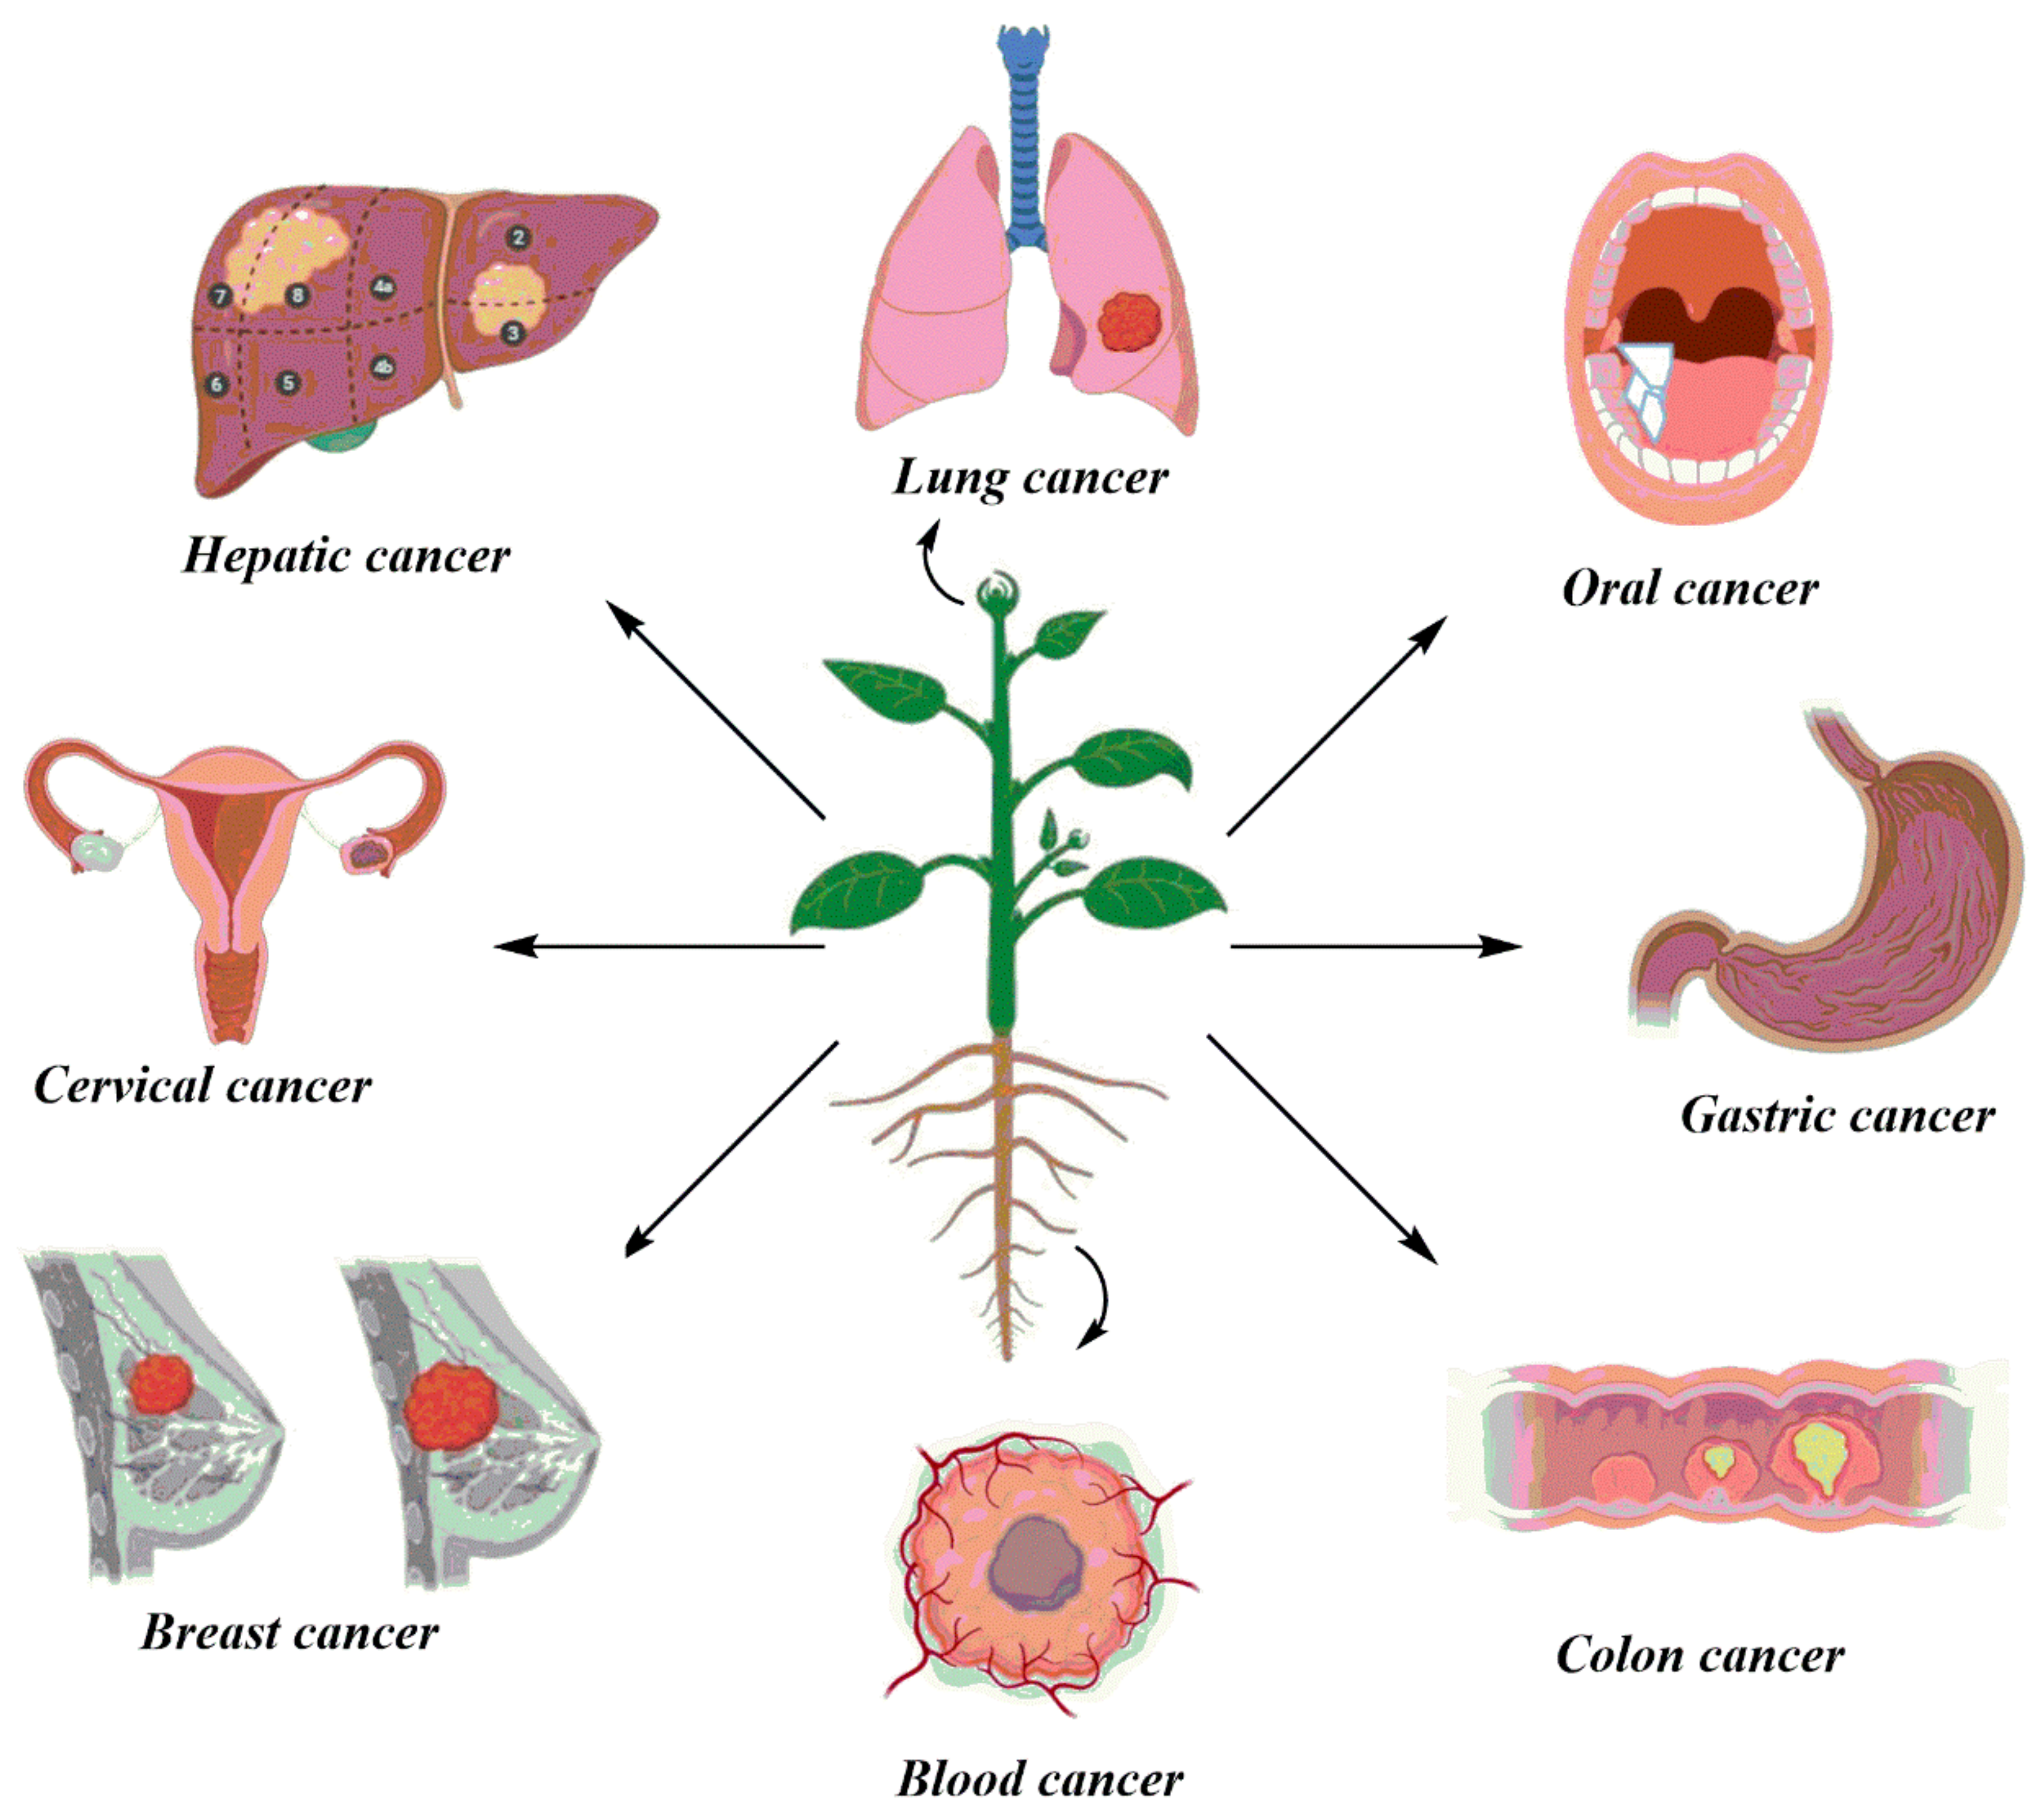 Anti-tumor properties of herbs